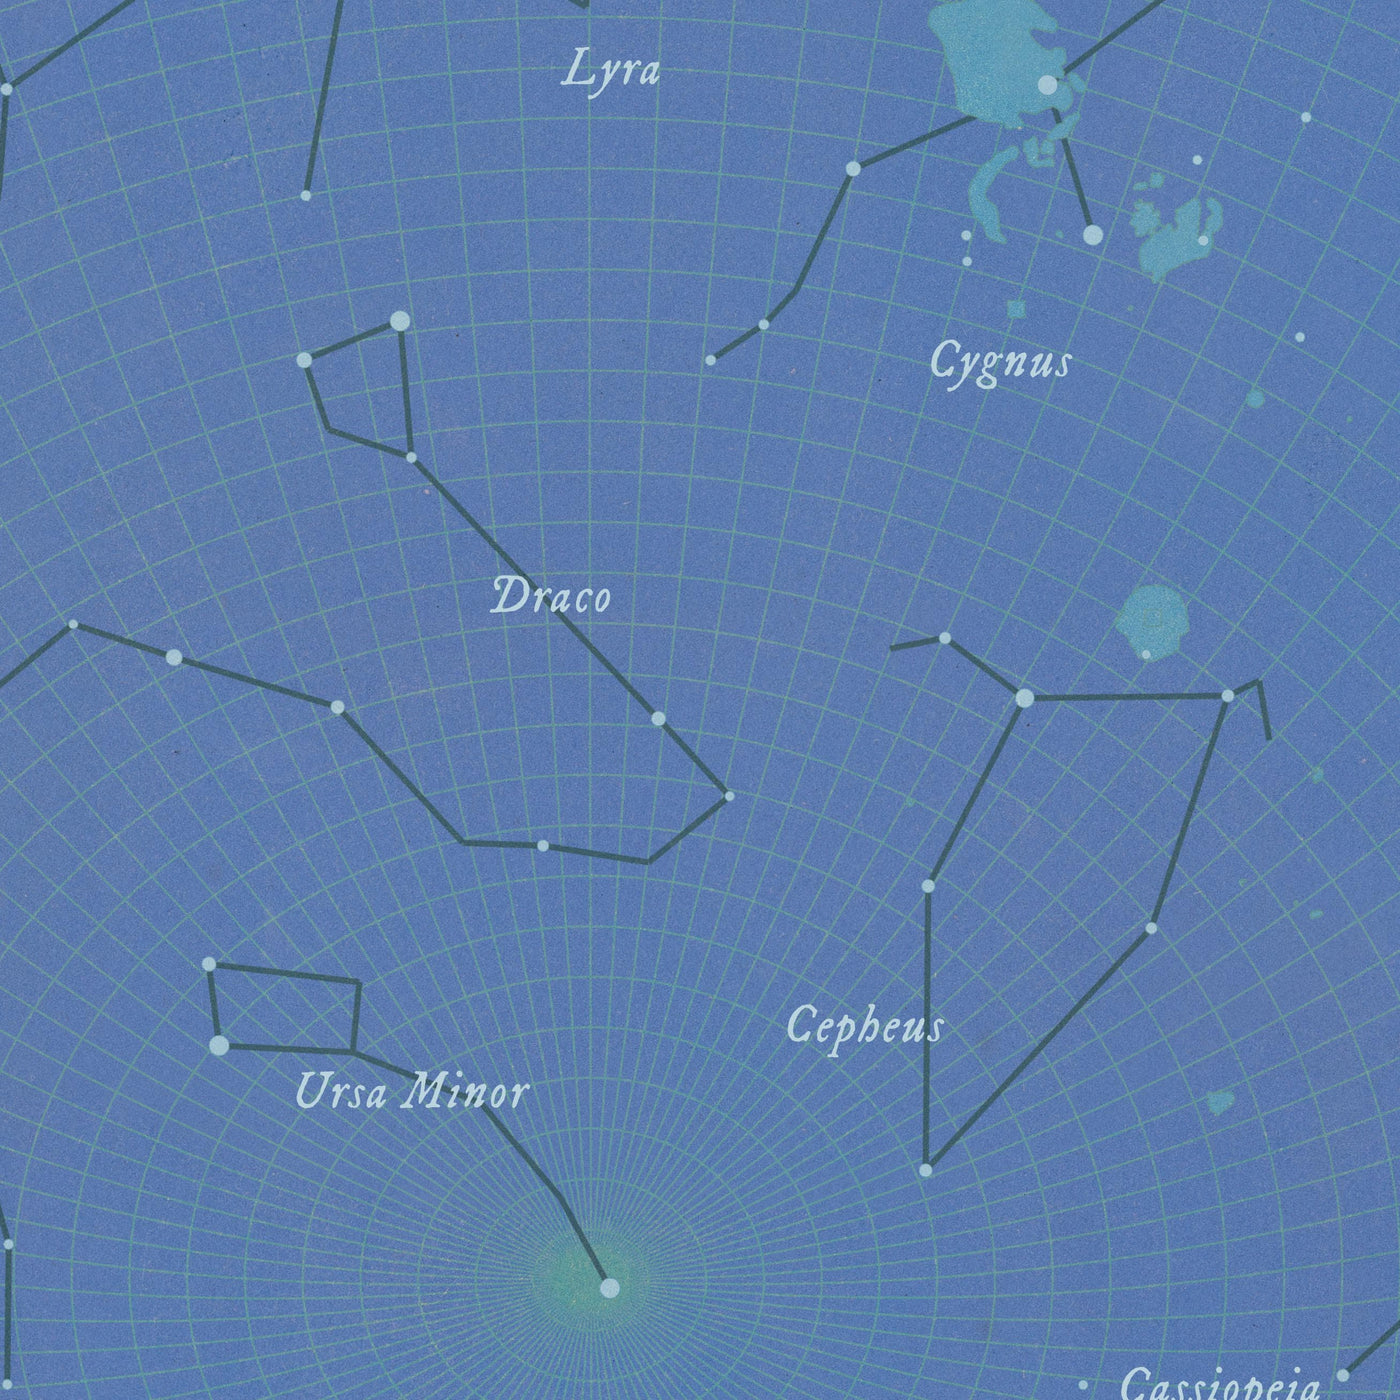 Mapa de estrellas antiguas personalizado: Carta celestial personalizada para una fecha específica, cumpleaños y aniversario